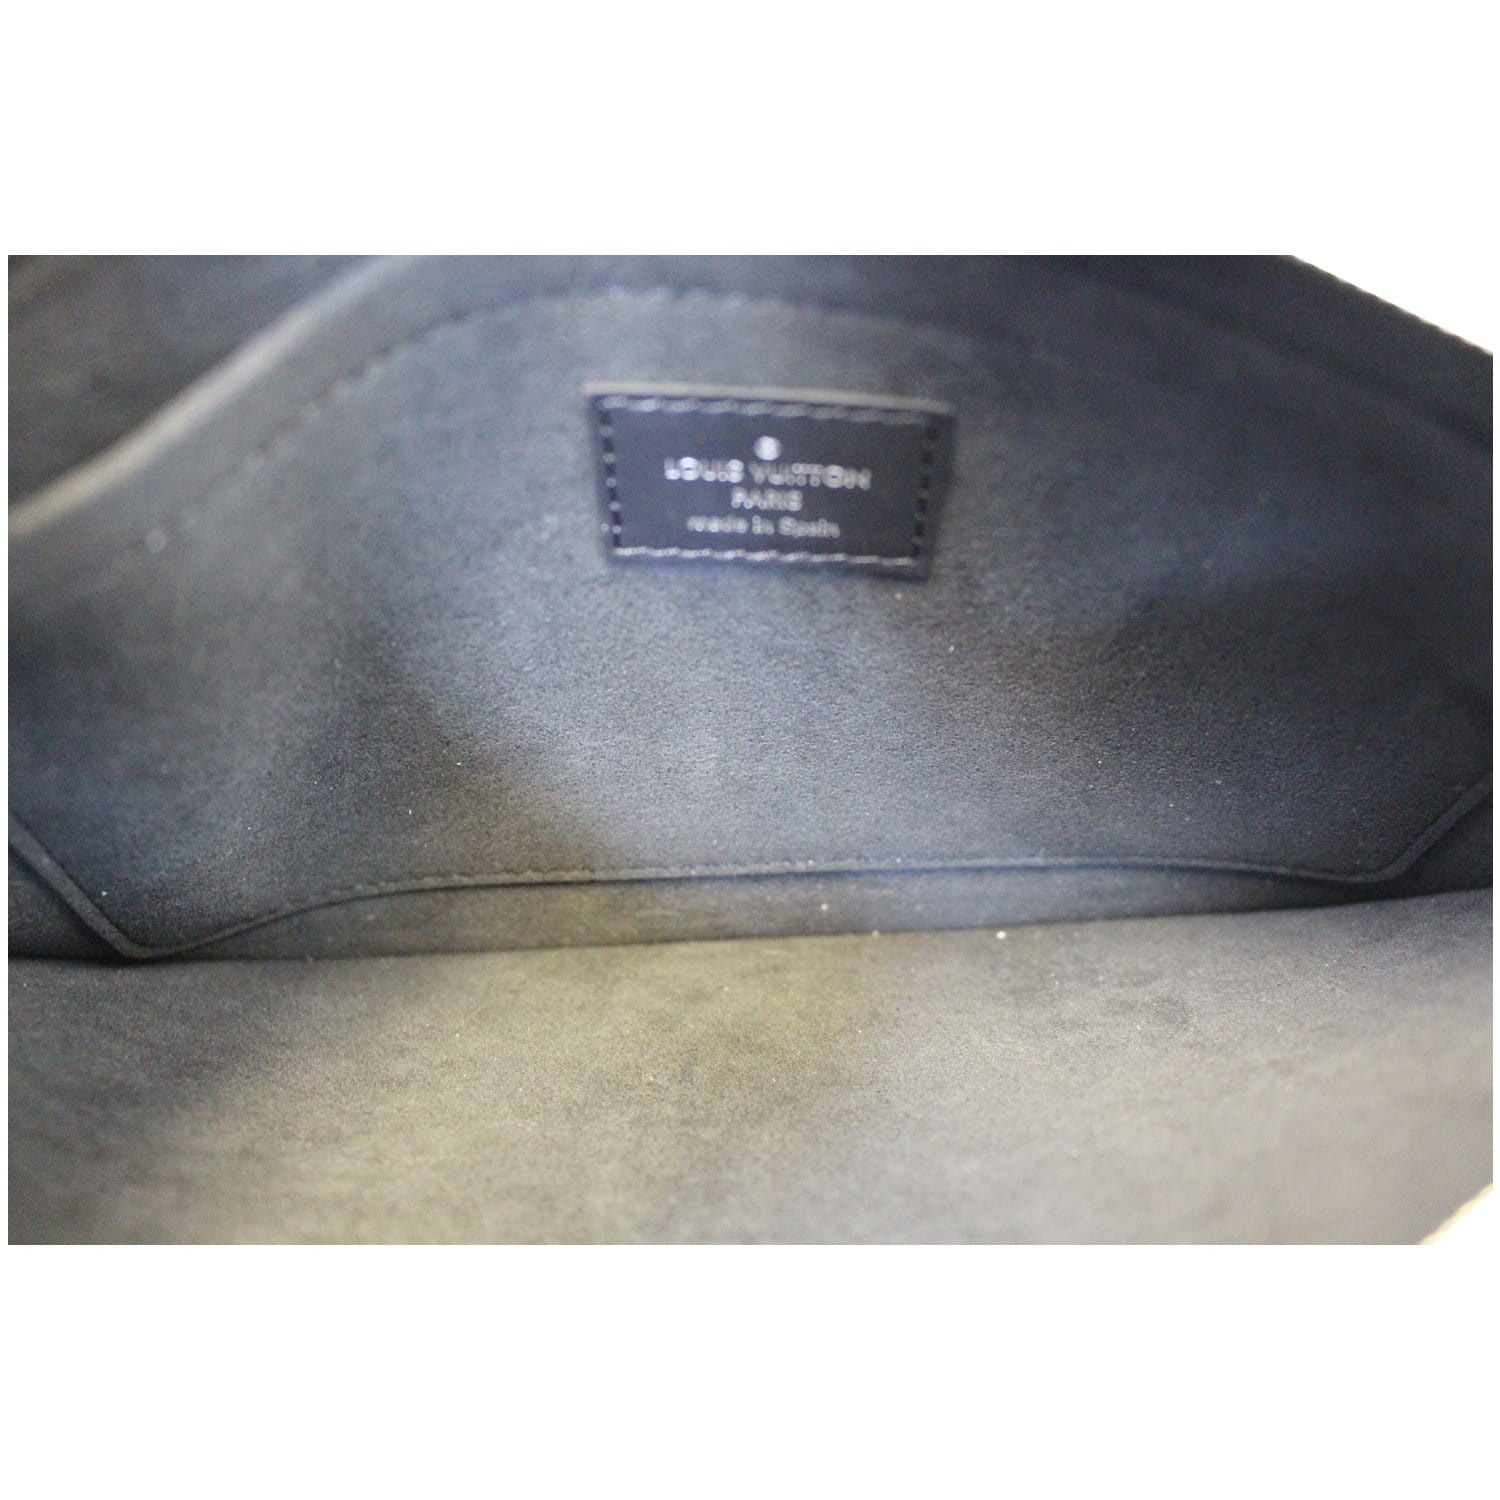 Louis Vuitton Black Epi Leather Neverfull MM Bag Louis Vuitton